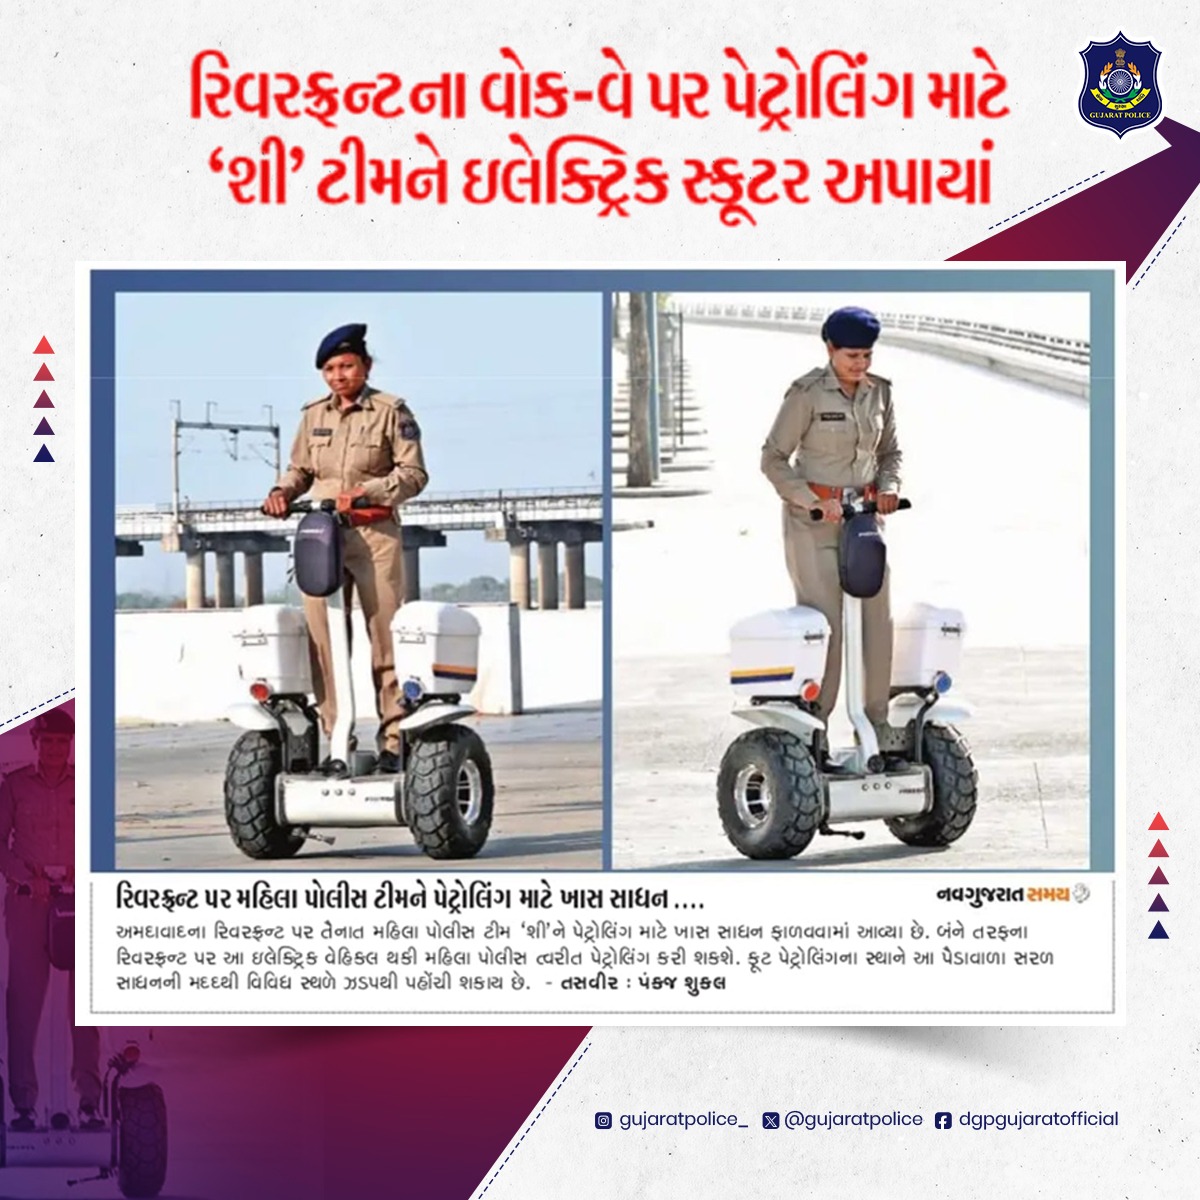 આધુનિક ટેક્નોલોજી સાથે સુરક્ષા વ્યવસ્થાને મજબૂત કરતી ગુજરાત પોલીસ ગુજરાત પોલીસ વિભાગે નવતર પ્રયોગ કરી અમદાવાદ રિવરફ્રન્ટ પર મહિલા પોલીસની શી ટીમને પેટ્રોલિંગ માટે ઇલેક્ટ્રિક વ્હીકલ ફાળવીને પેટ્રોલિંગને ઝડપી અને અસરકારક બનાવ્યું છે.